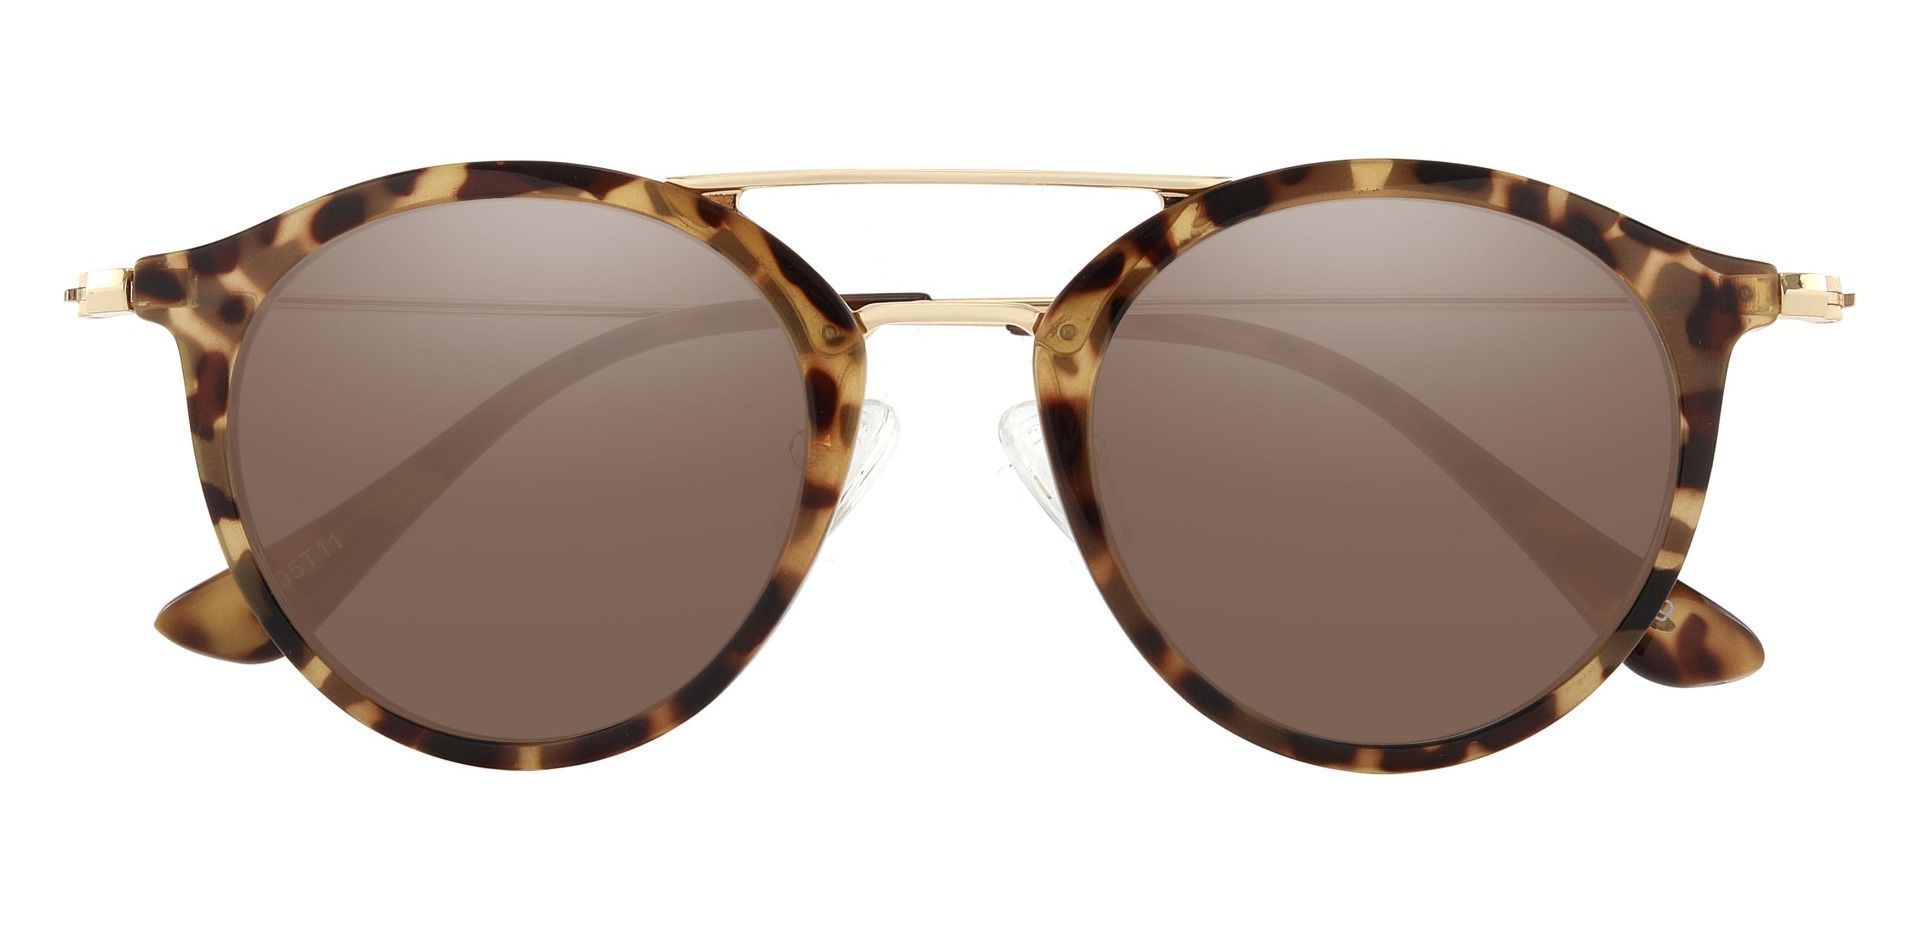 Malden Aviator Prescription Sunglasses - Tortoise Frame With Brown Lenses